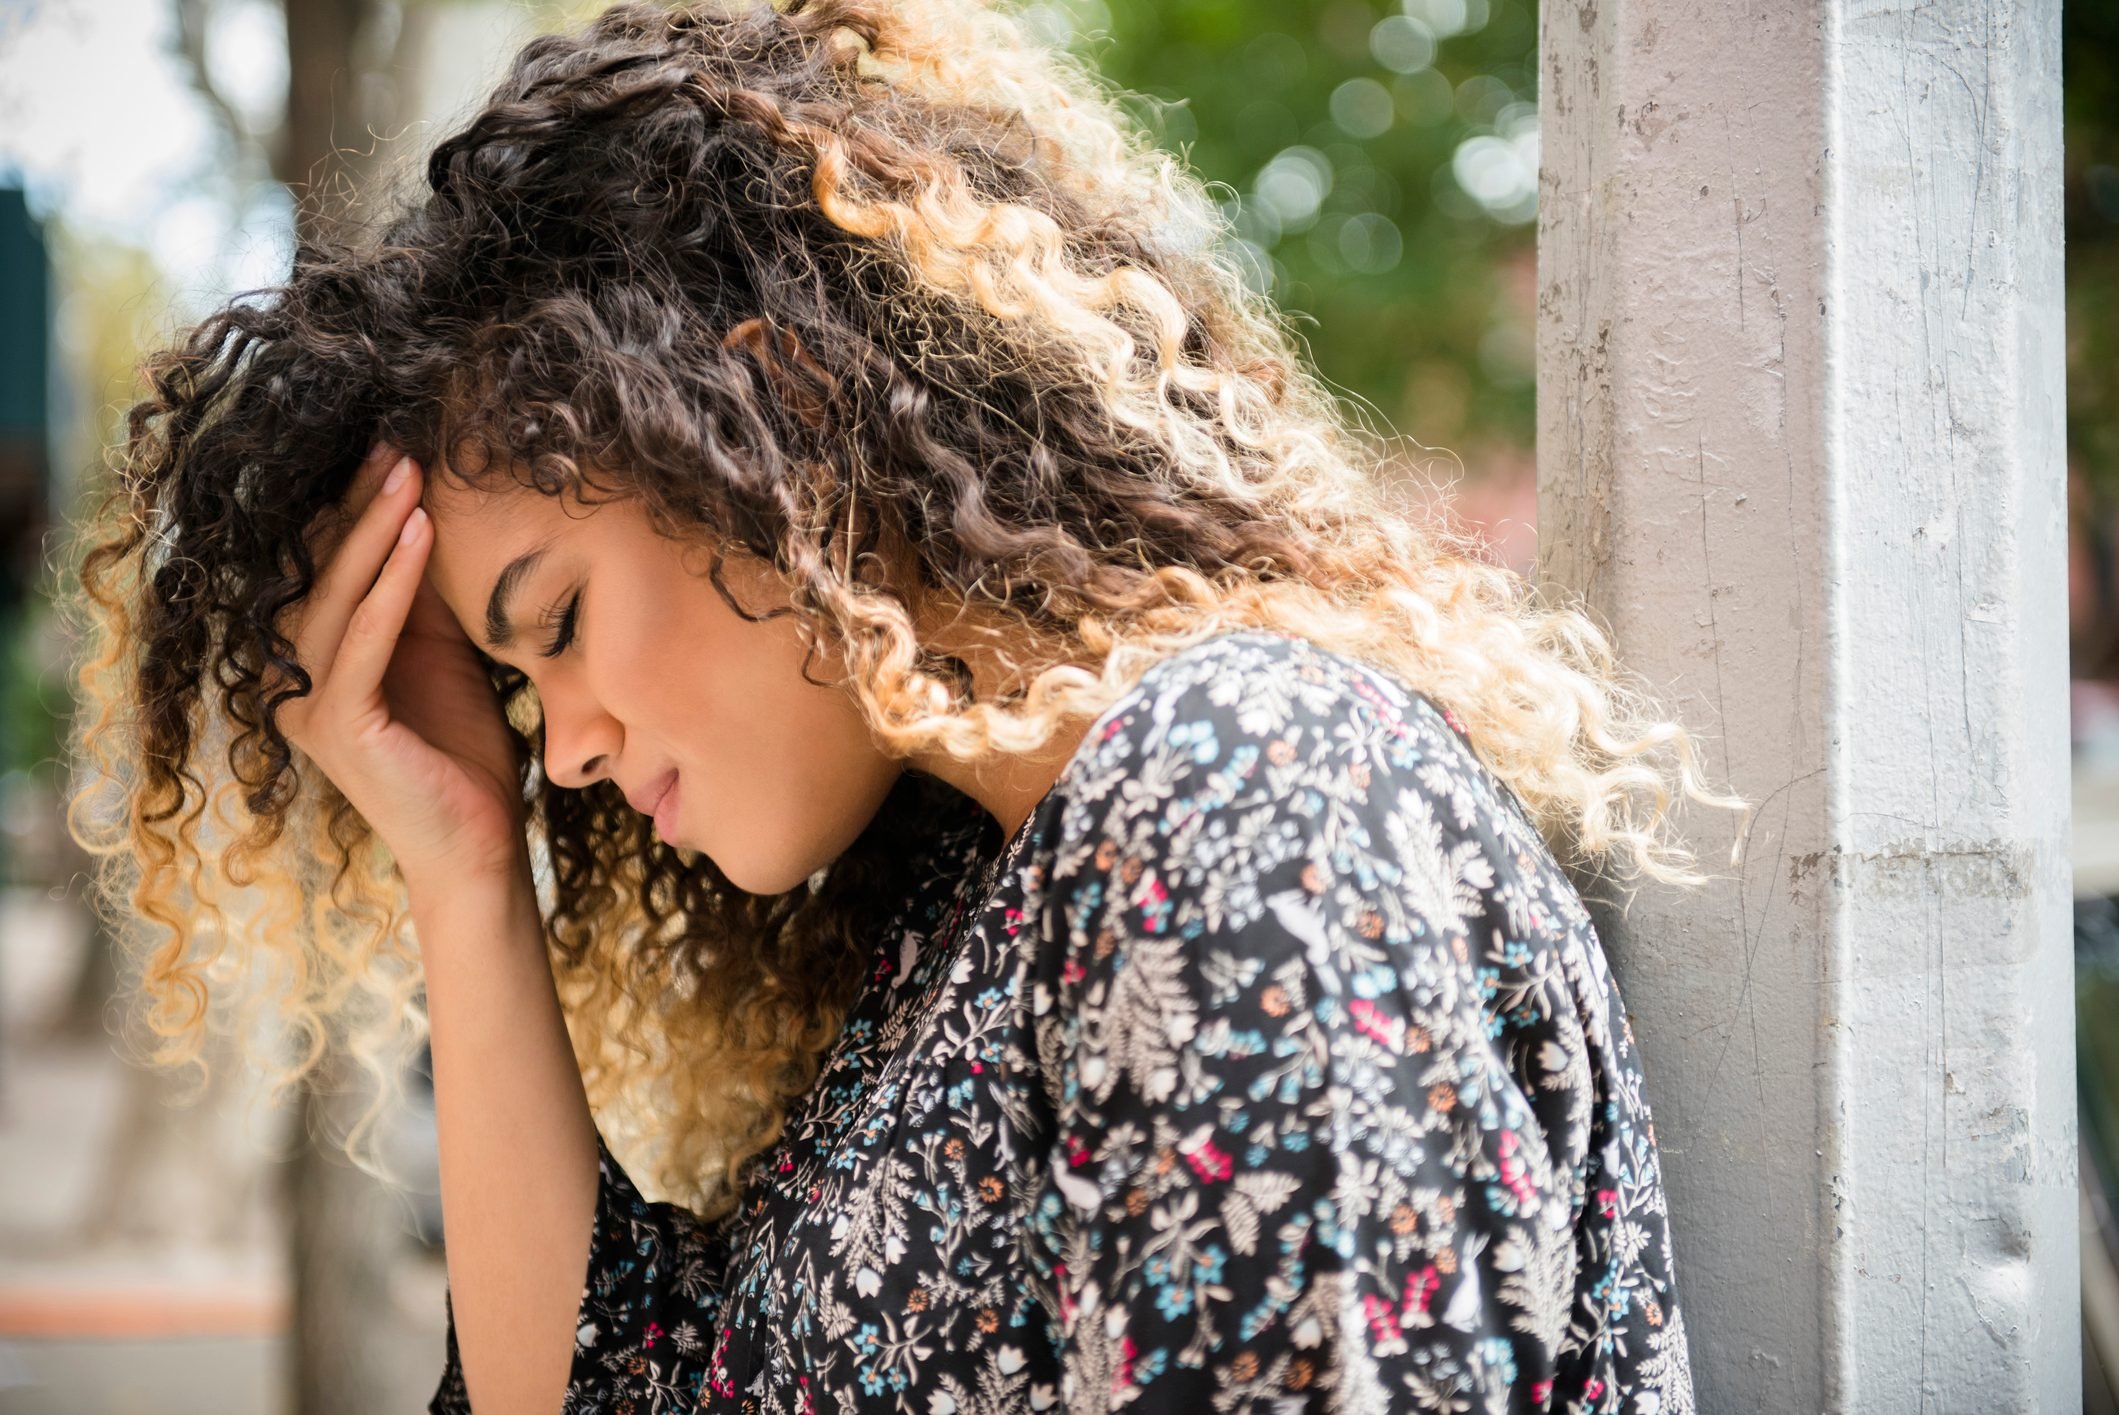 7 Symptoms of a Complex Migraine You Should Know